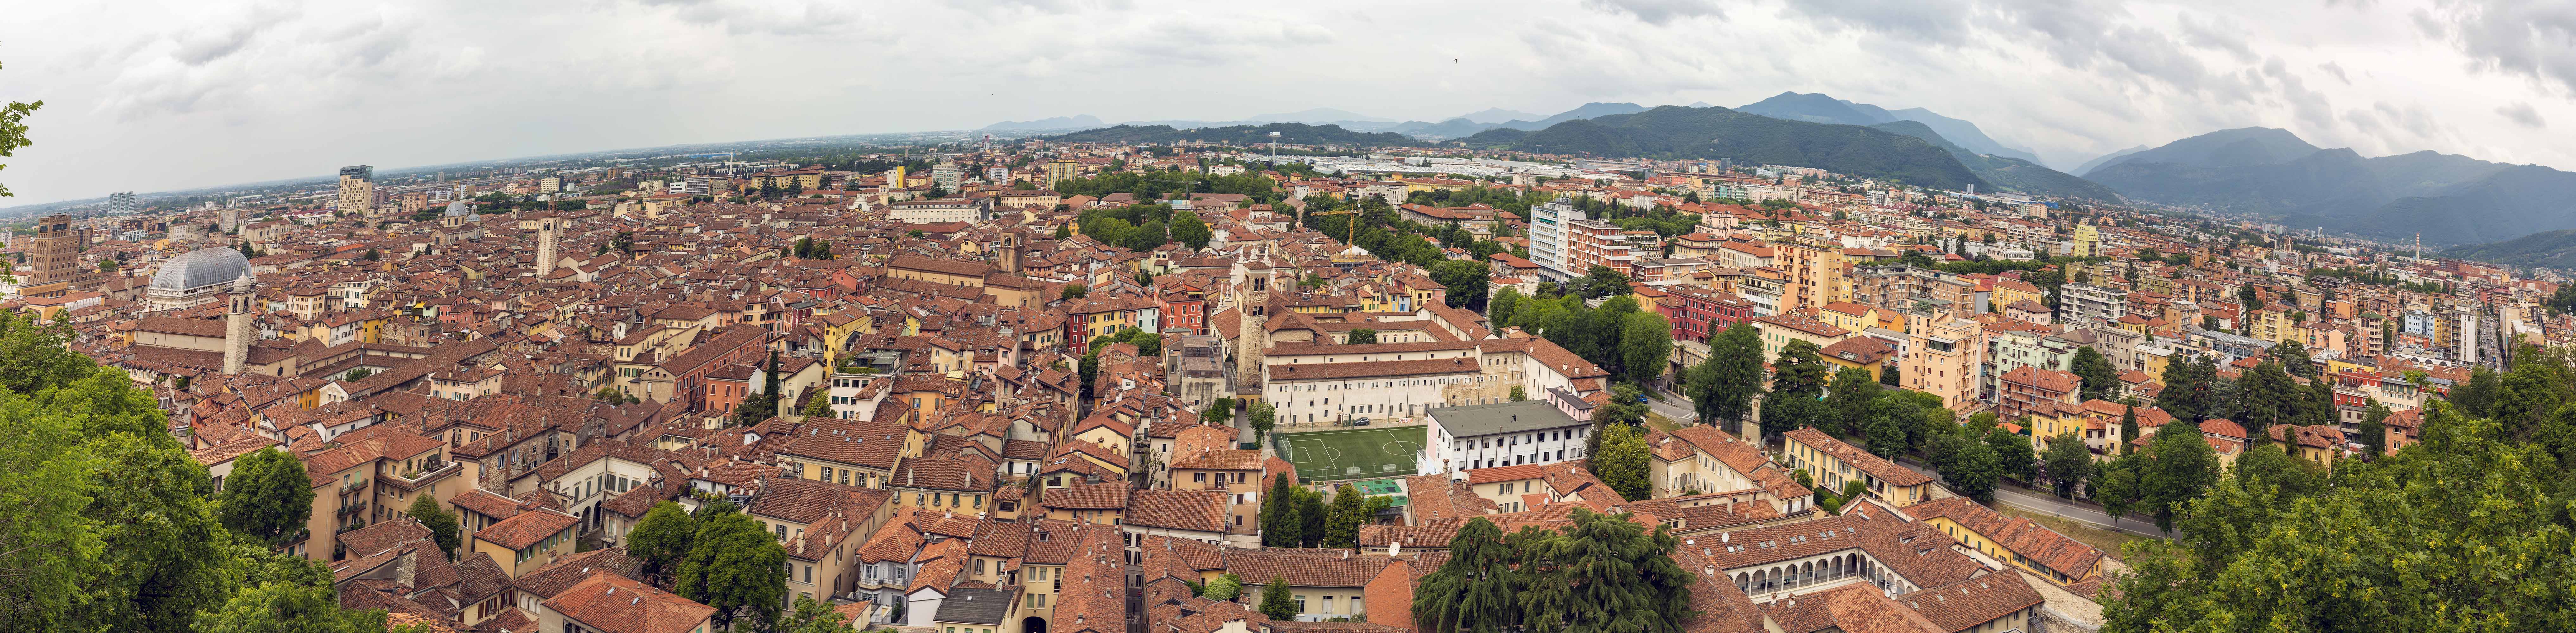 Brescia - Panorama von Brescia